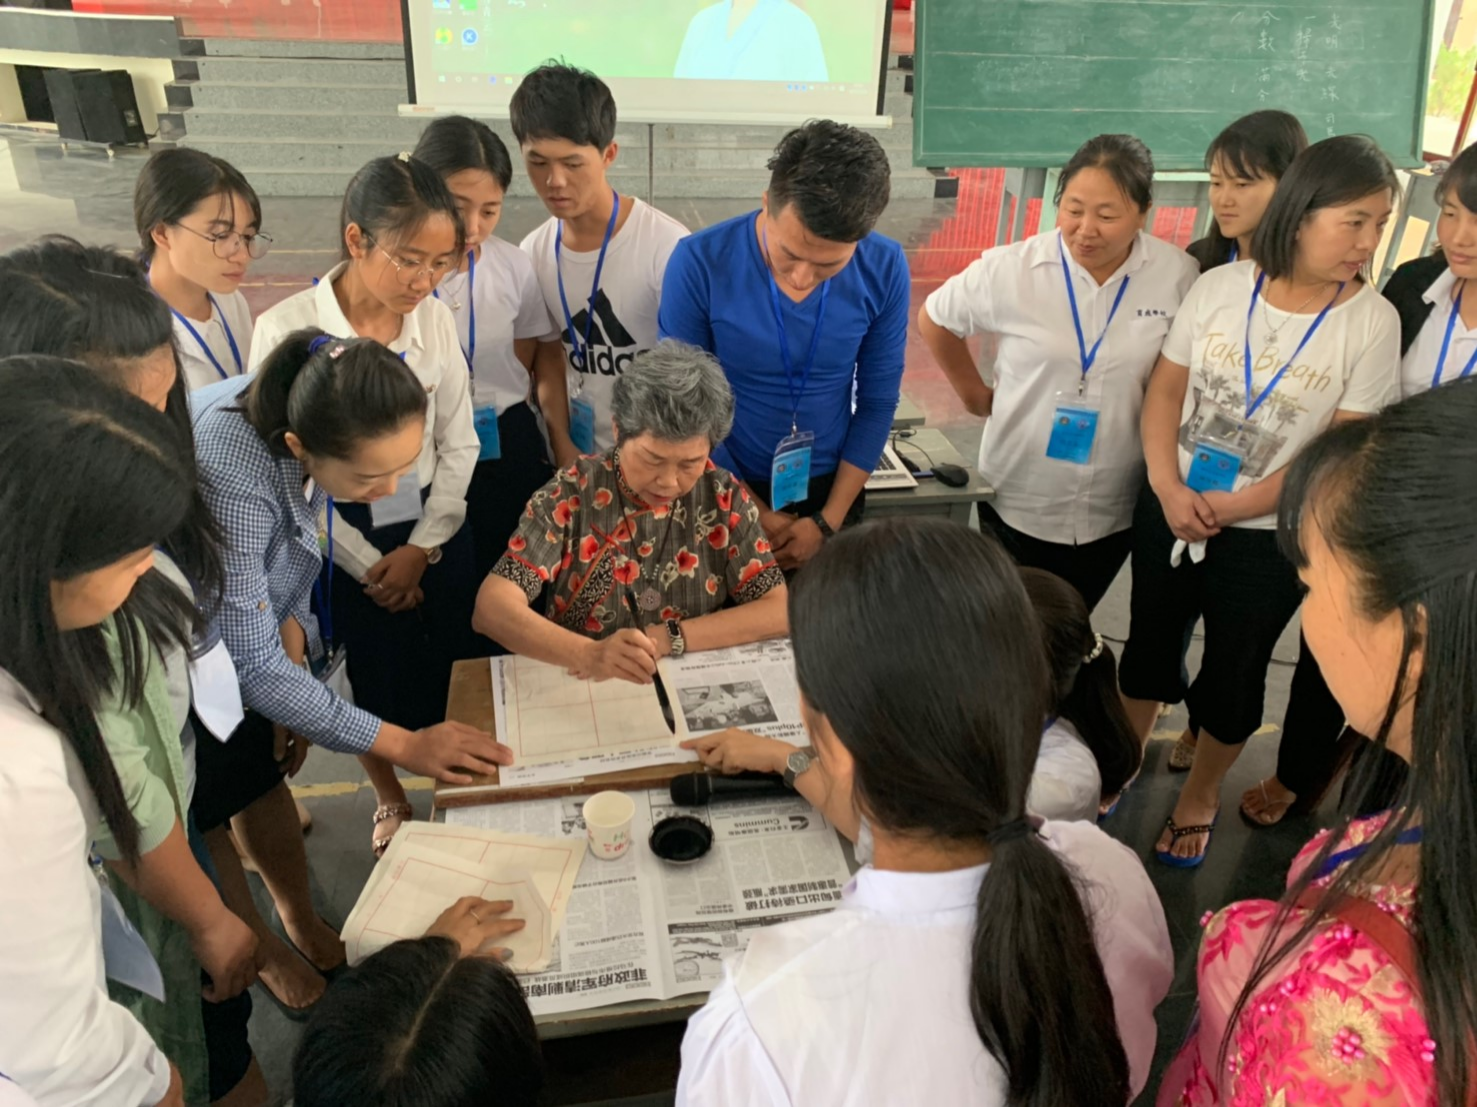 密支那育成學校舉辦2019華文教師研習會 16校教師參訓圖片